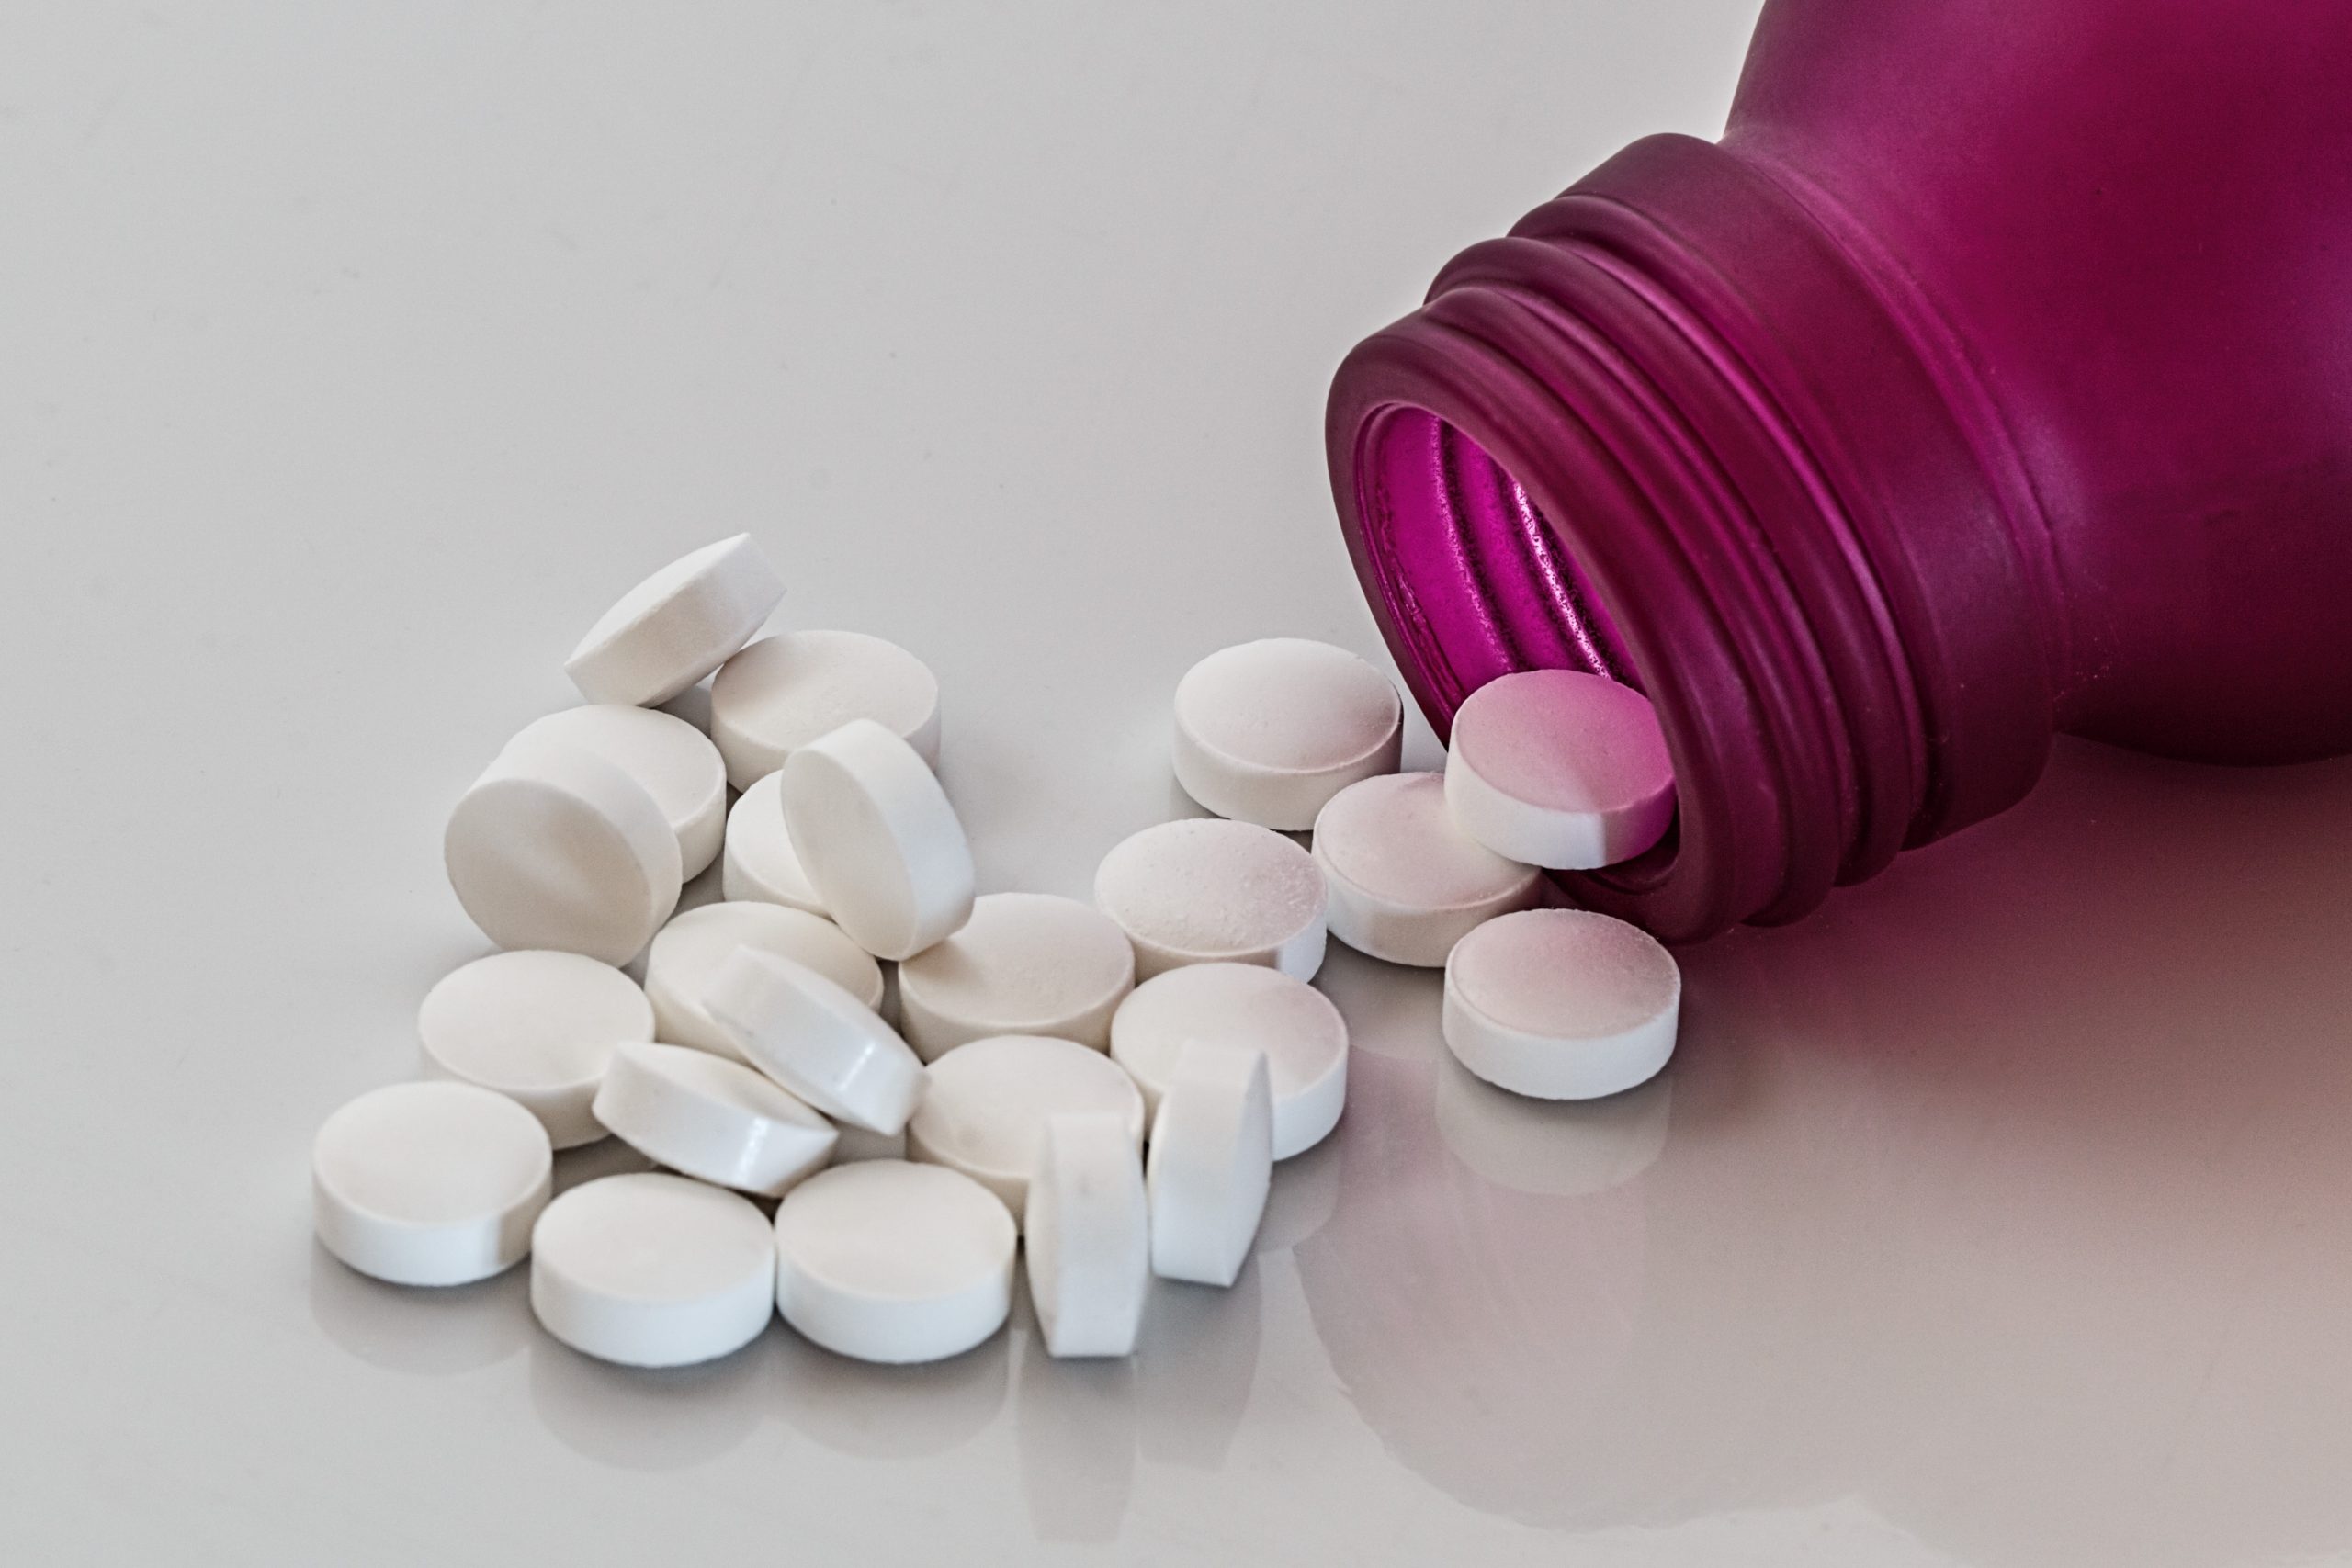 pills_medication_tablets_bottle-scaled